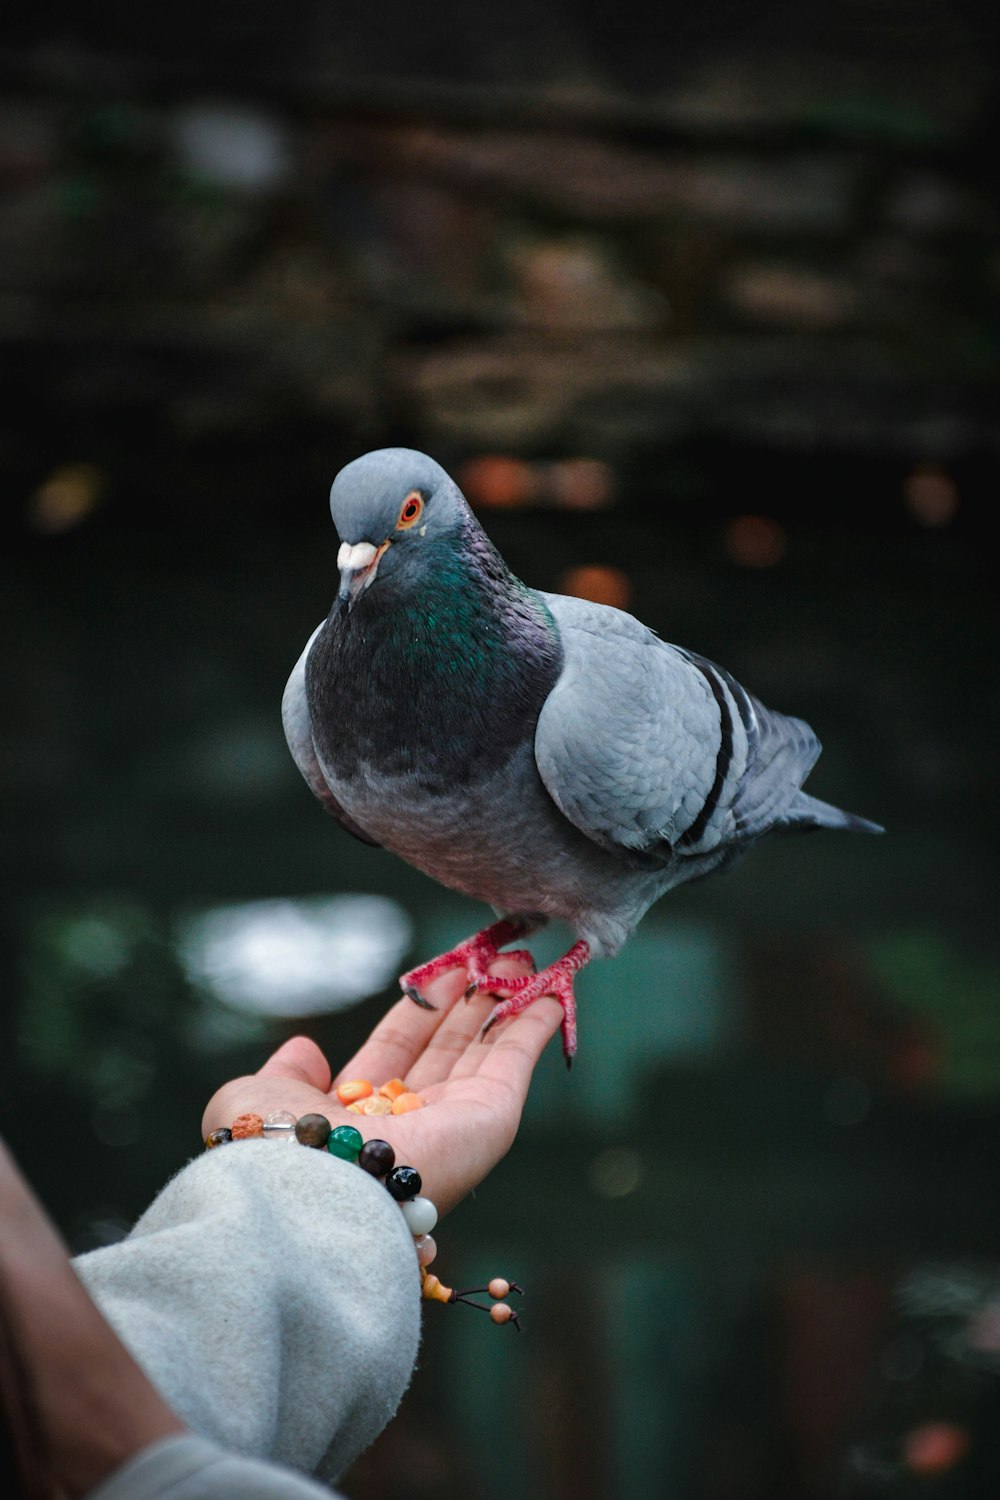 un piccione appollaiato sulla mano di una persona